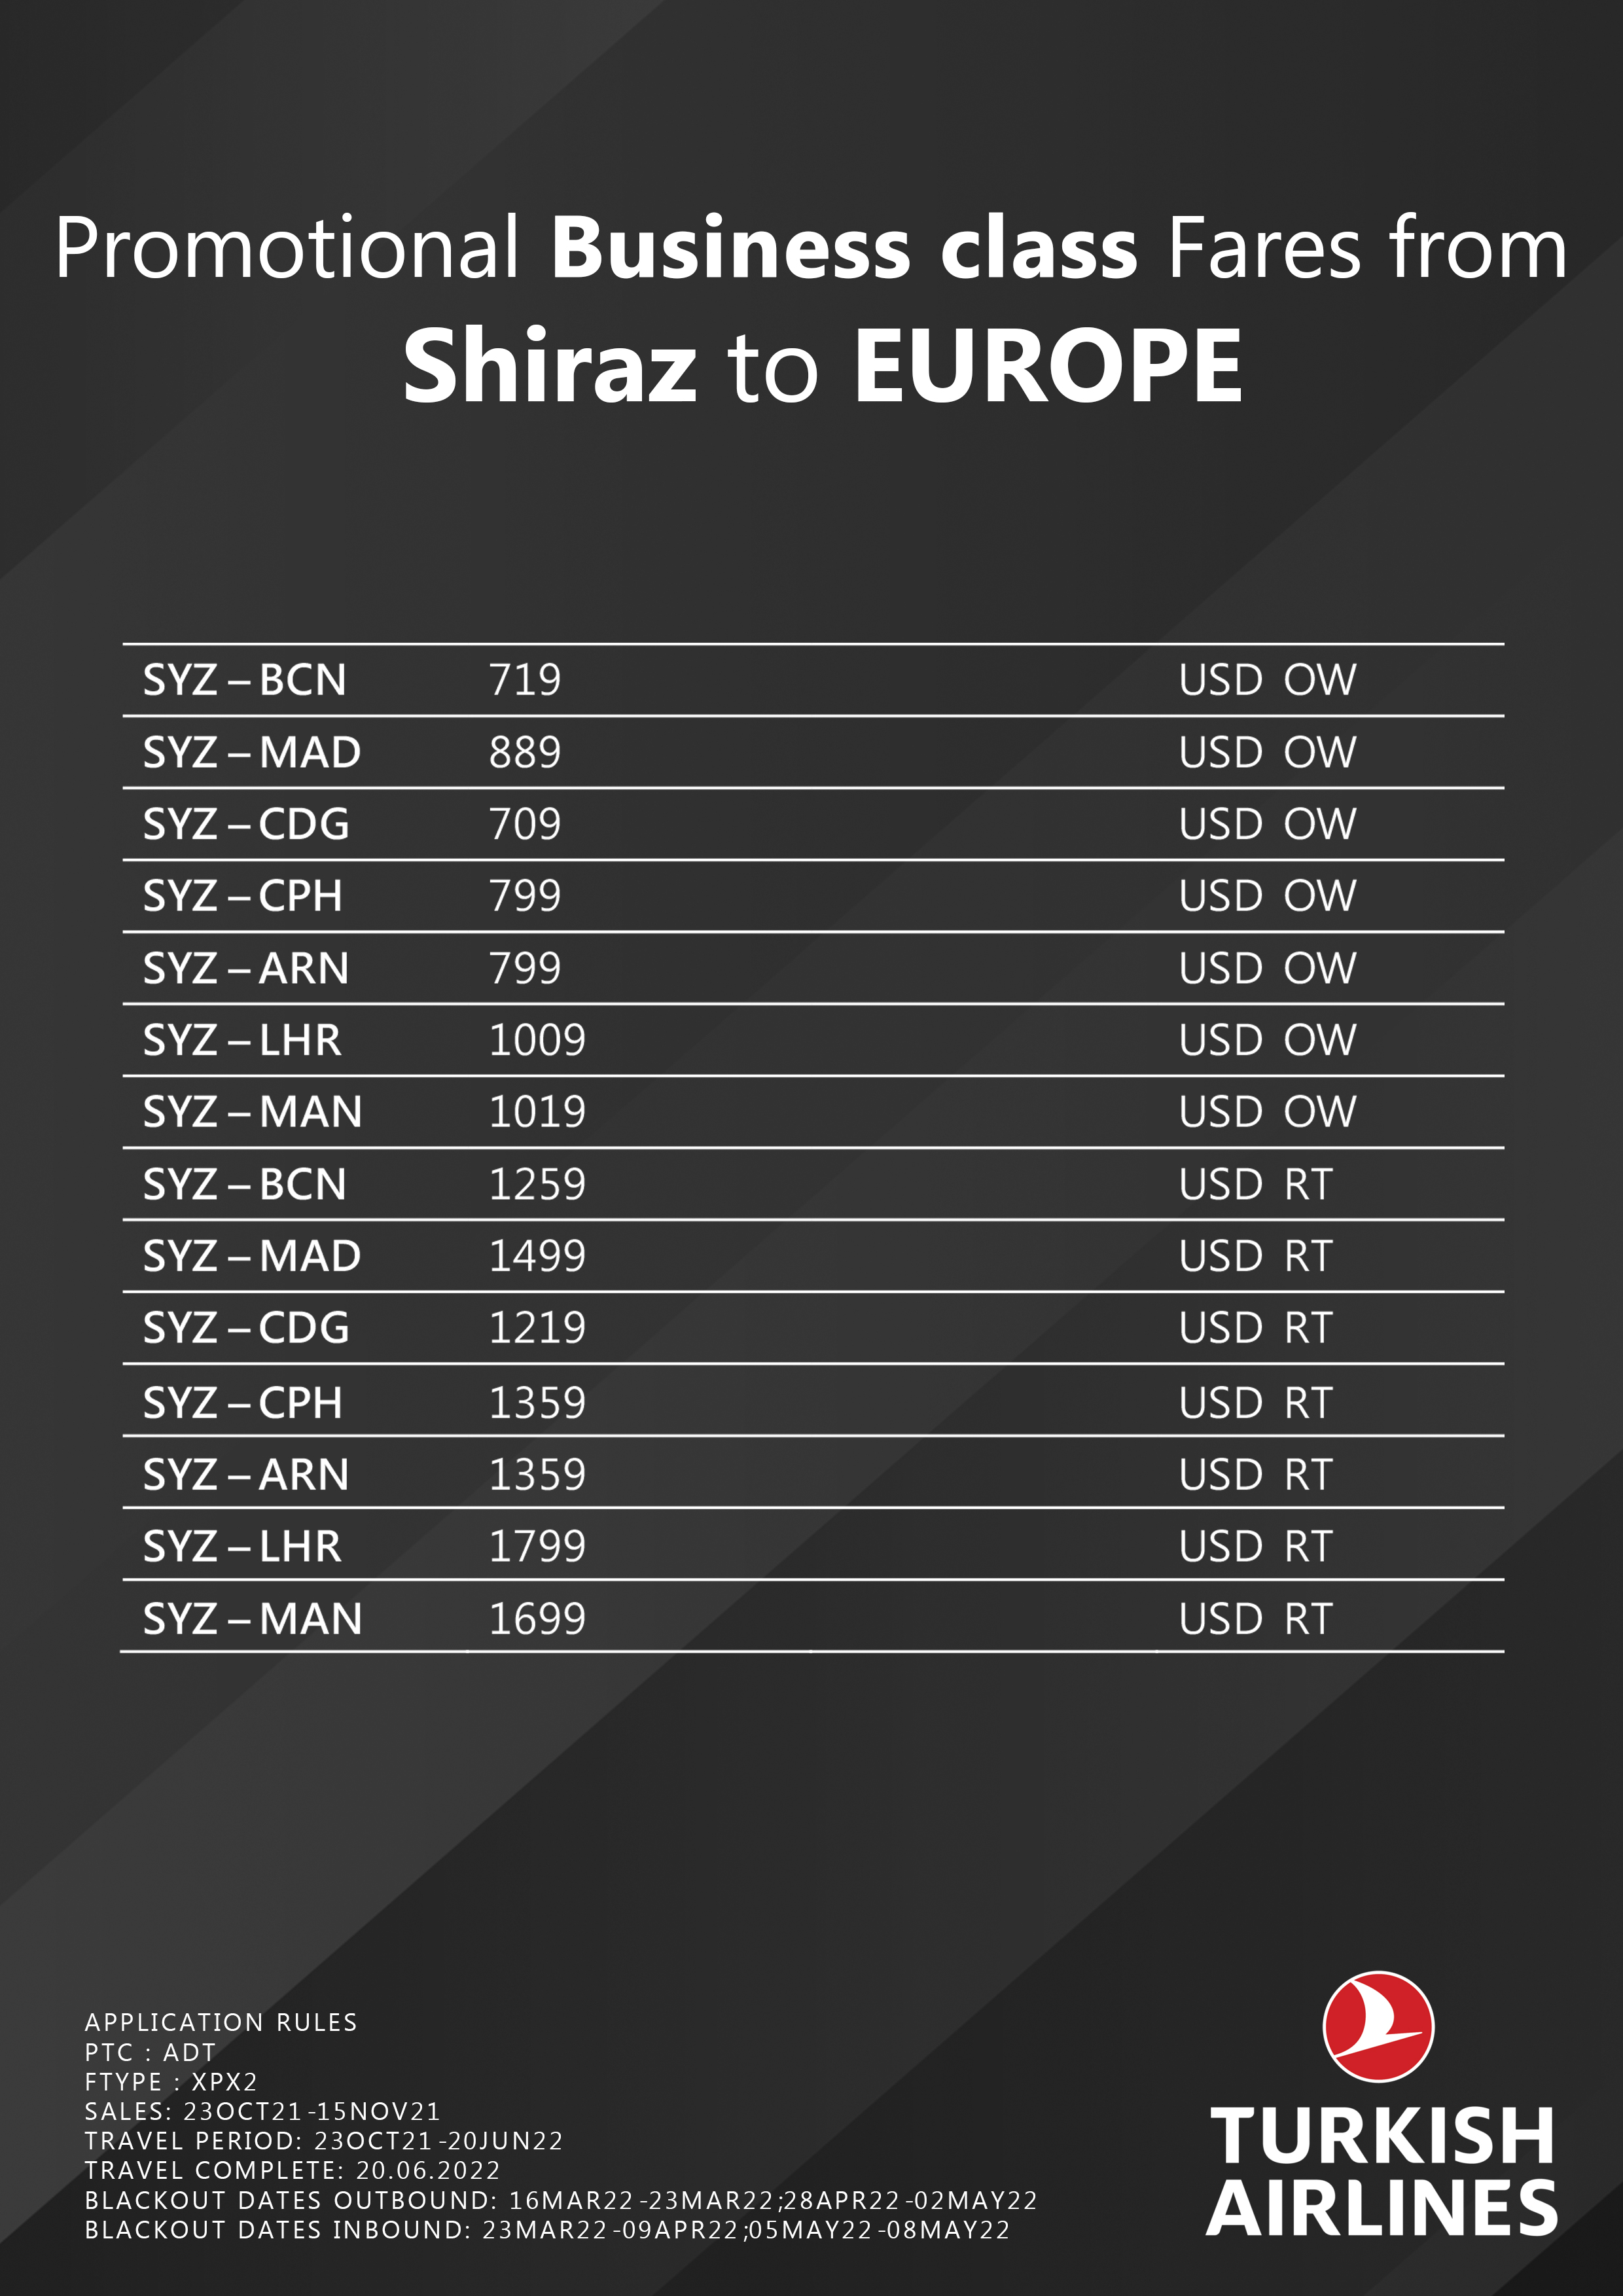 بخشنامه و اطلاعیه   هواپیمایی ترکیش درباره نرخهای ویژه از شیراز به اروپا در کلاس بیزینس